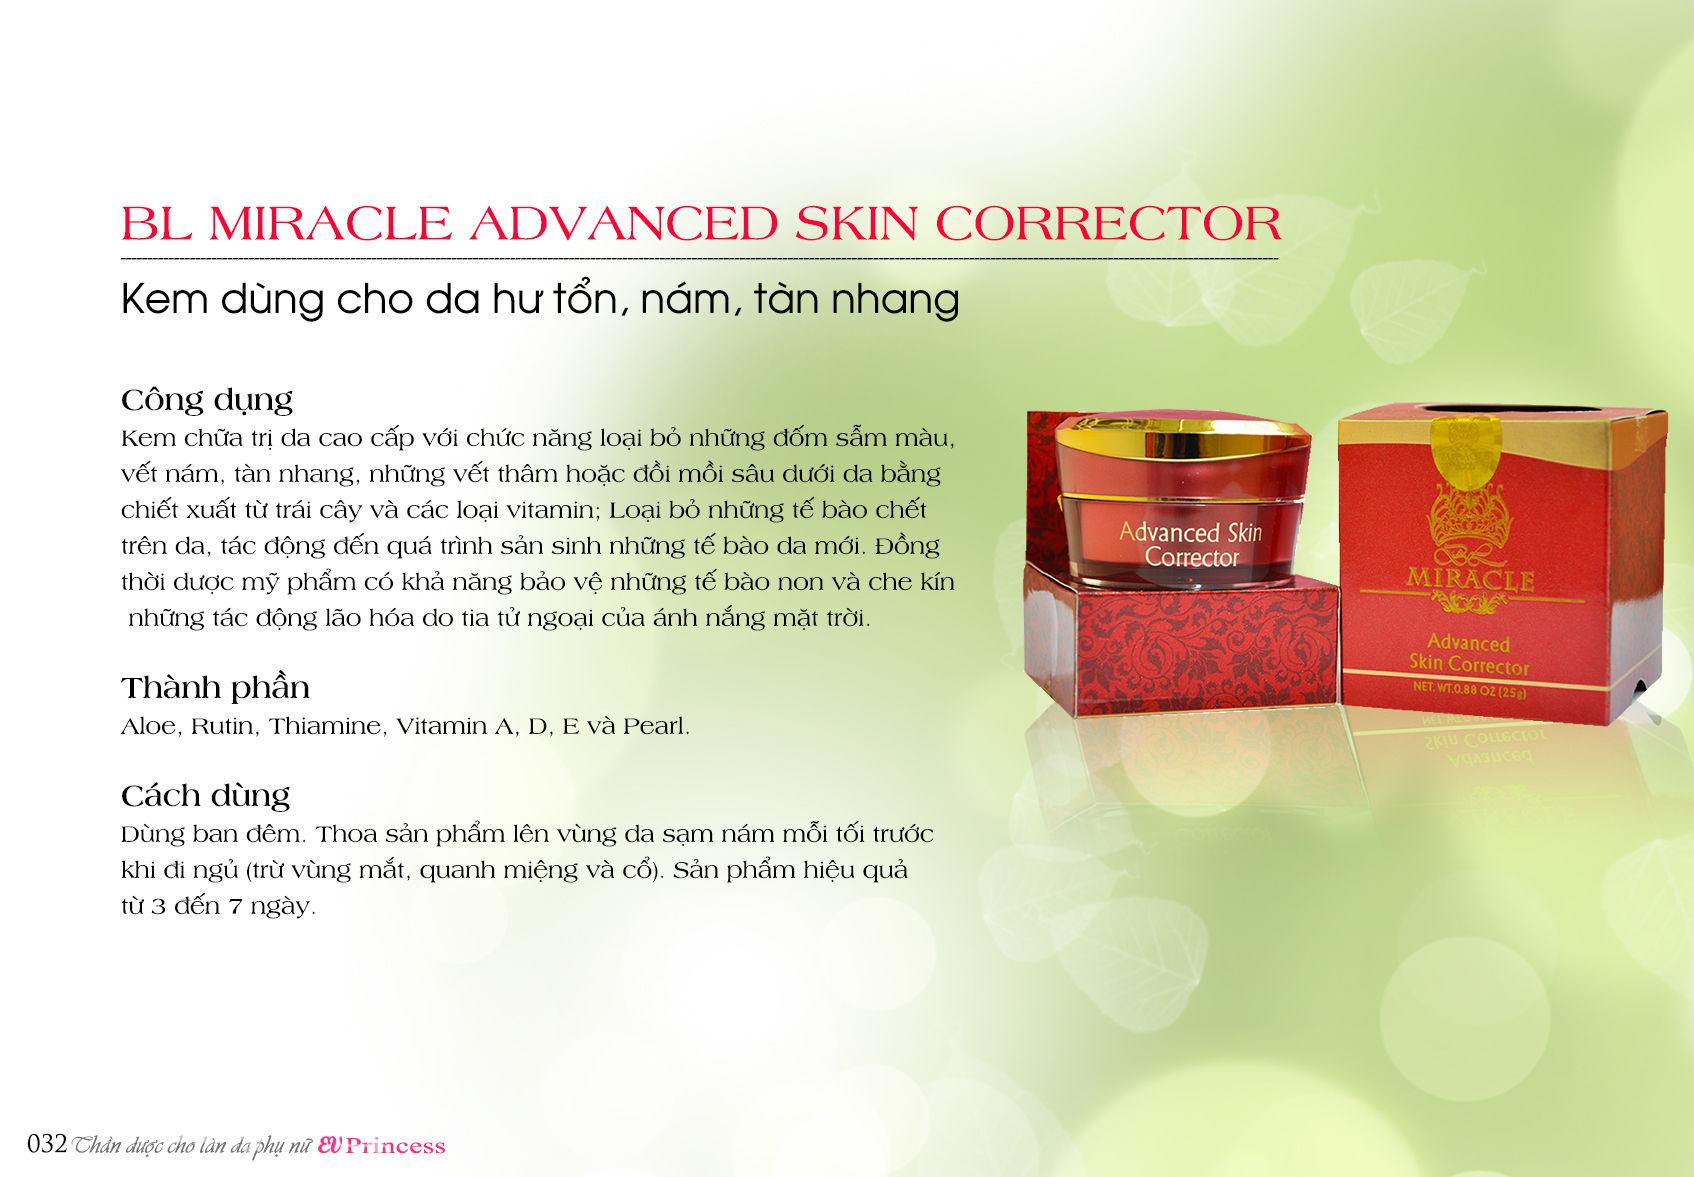 BL Miracle Advanced Skin Corrector - Kem dùng cho da nám, tàn nhang, đồi mồi